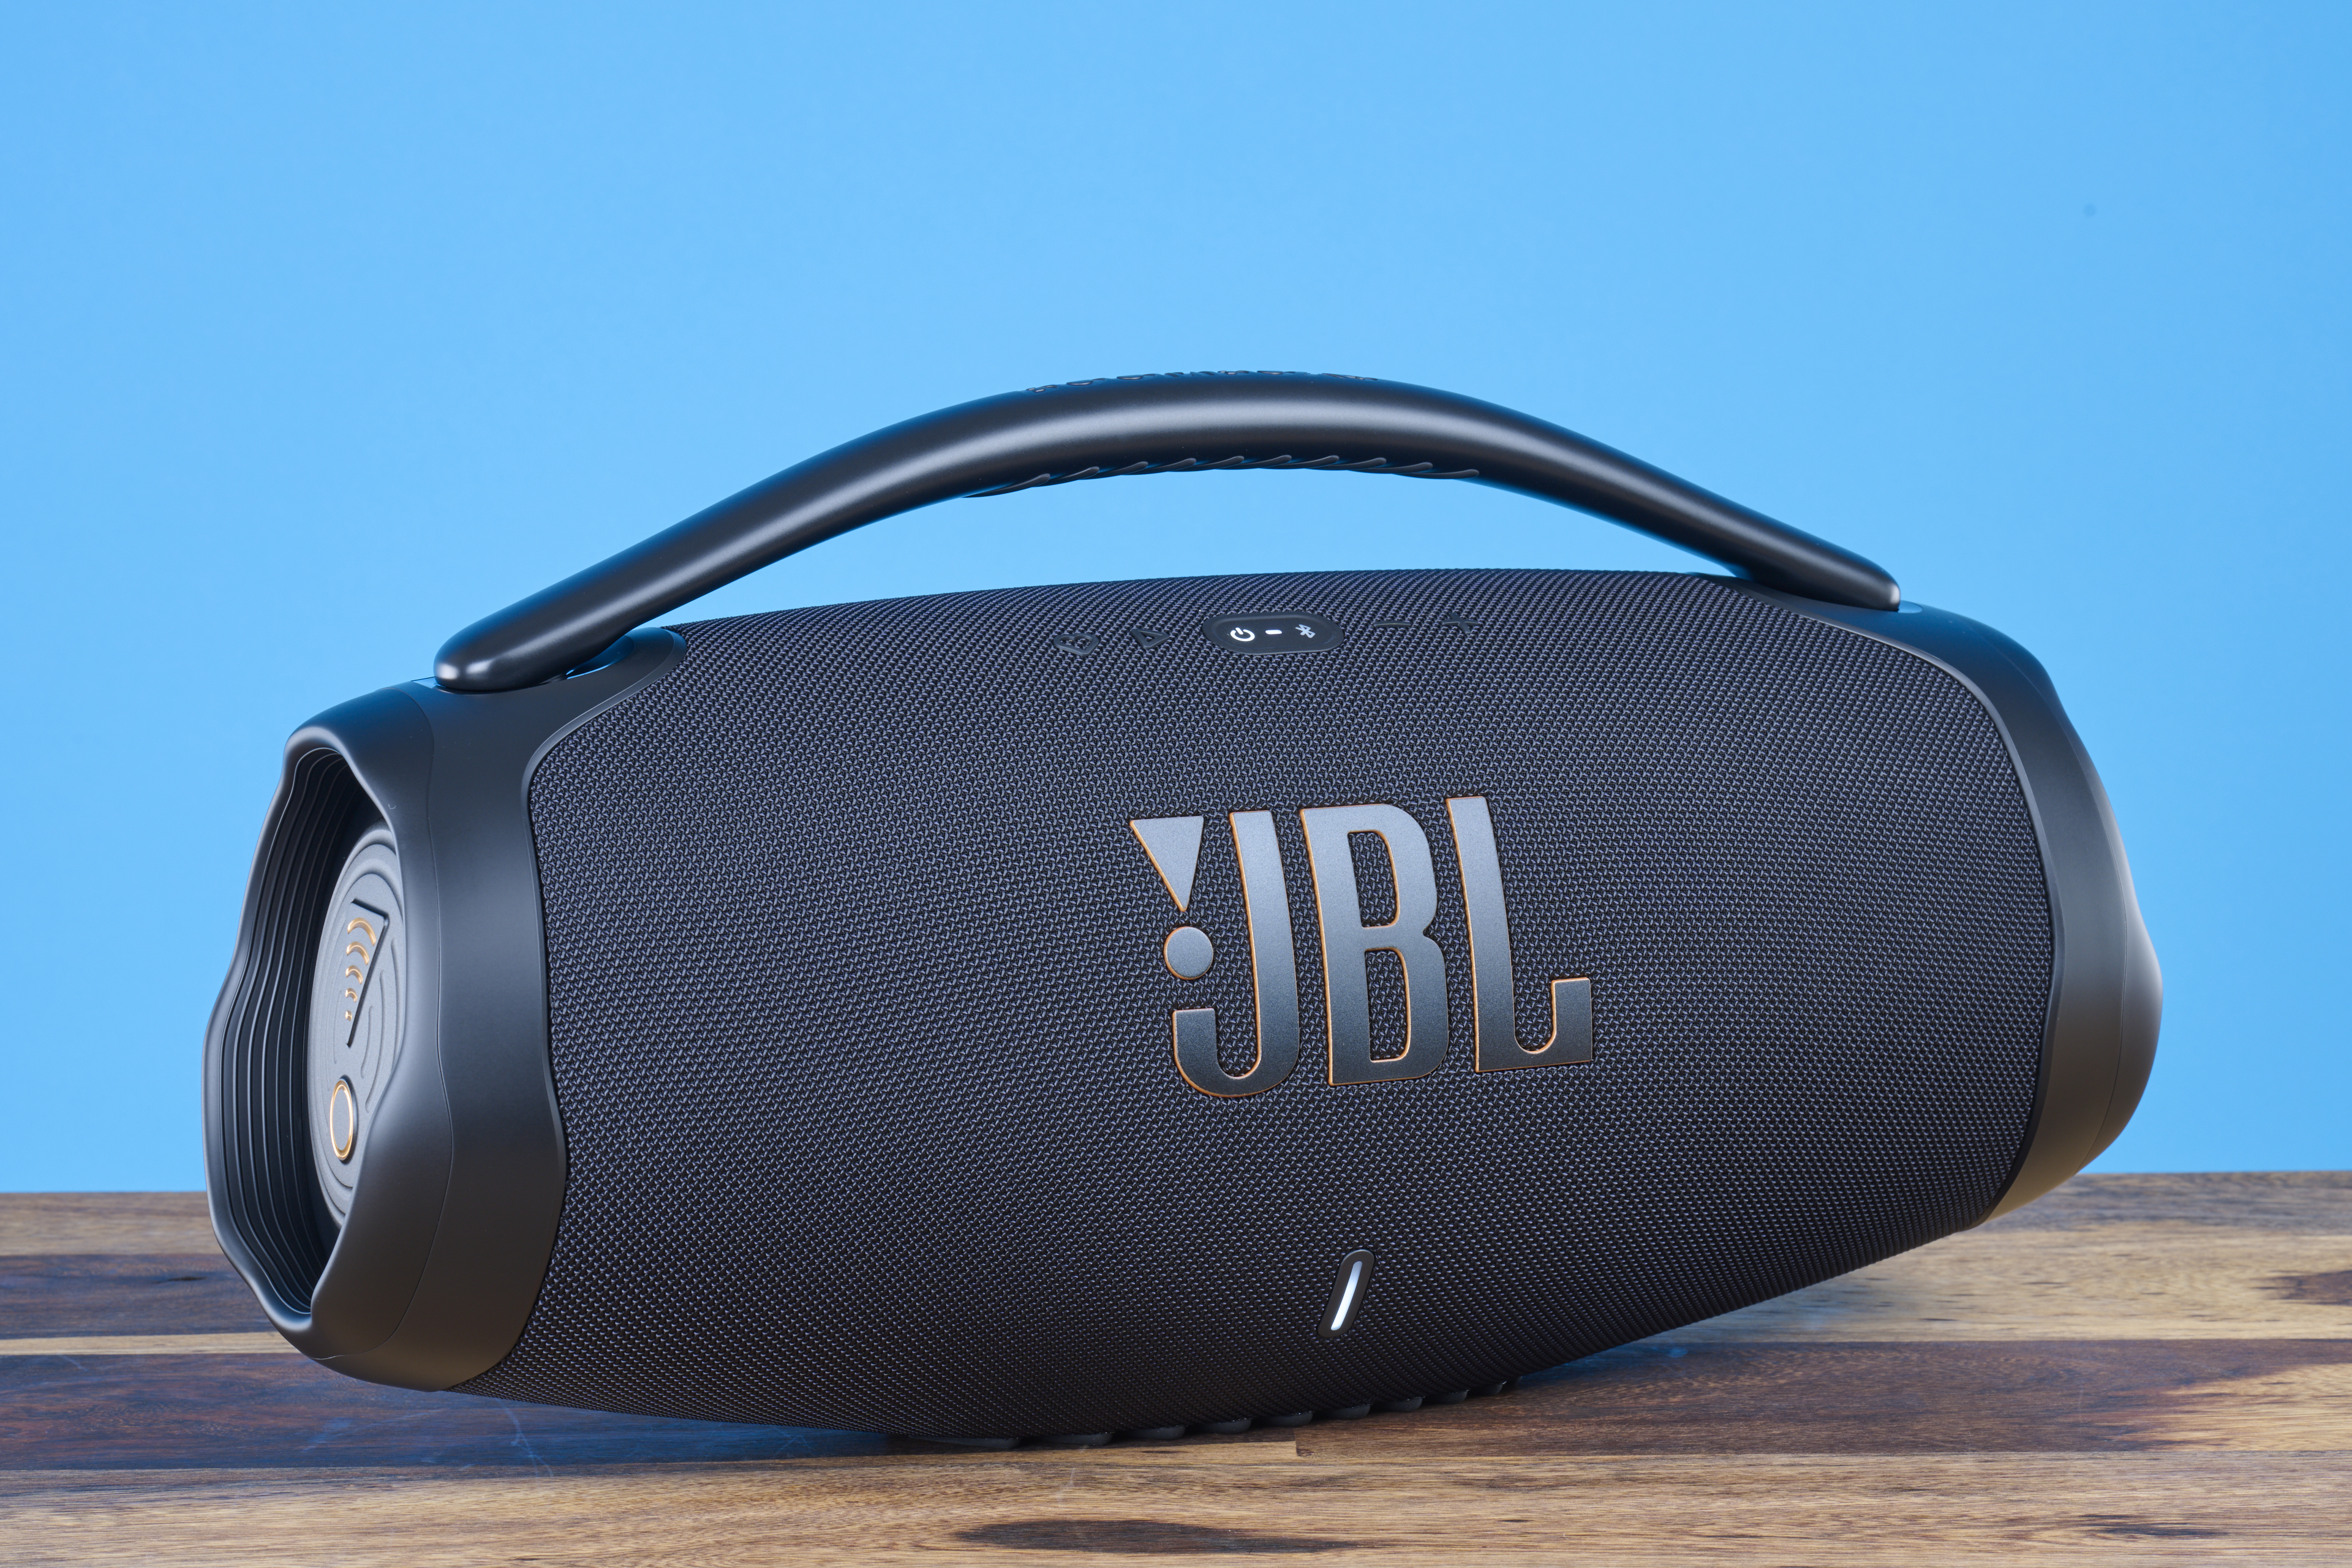 Boombox 3 JBL WLAN-Lautsprecher? auch Kann WiFi: JBL